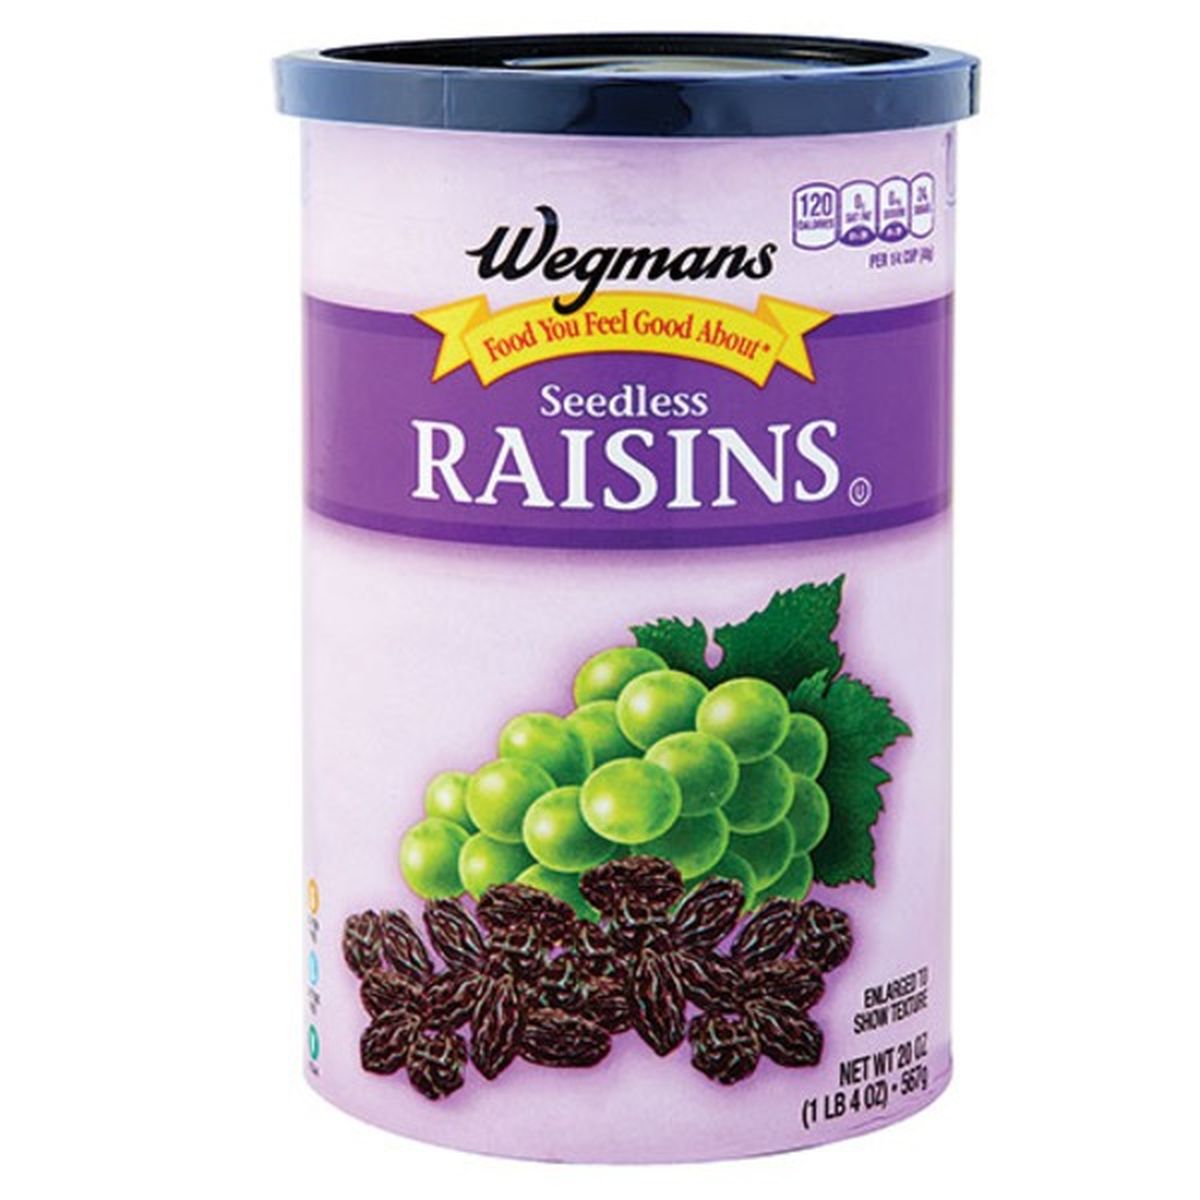 Calories in Wegmans Seedless Raisins